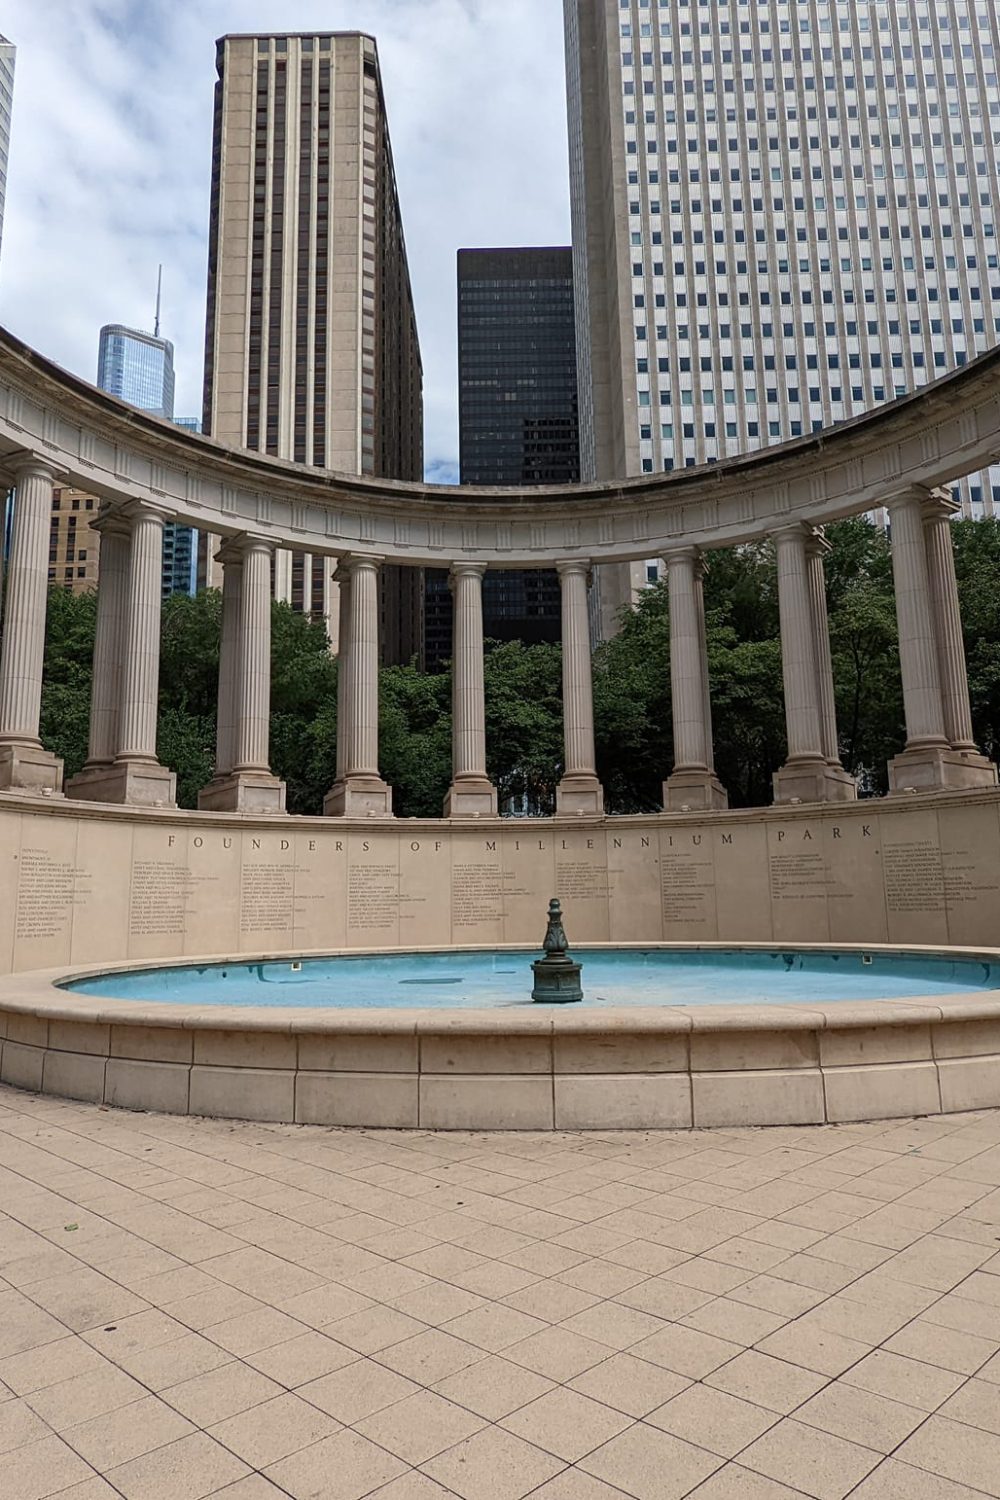 Millennium Monument in Millennial Park in Chicago, IL